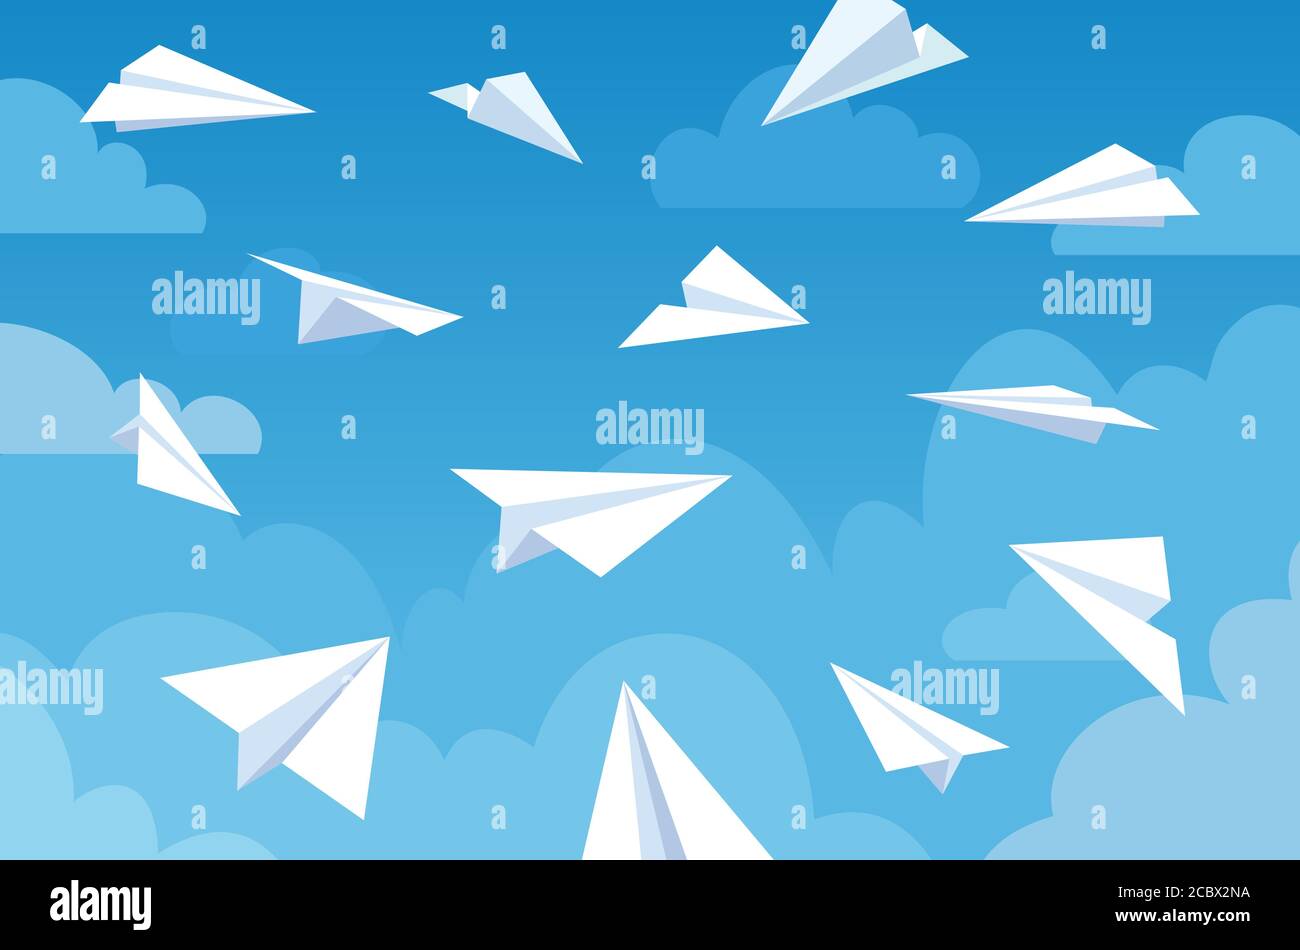 Papierflieger in blauem Himmel. Weiß fliegende Flugzeuge in Wolken aus verschiedenen Winkeln und Richtungen. Teamarbeit, Botschaft oder Reisevektorkonzept Stock Vektor